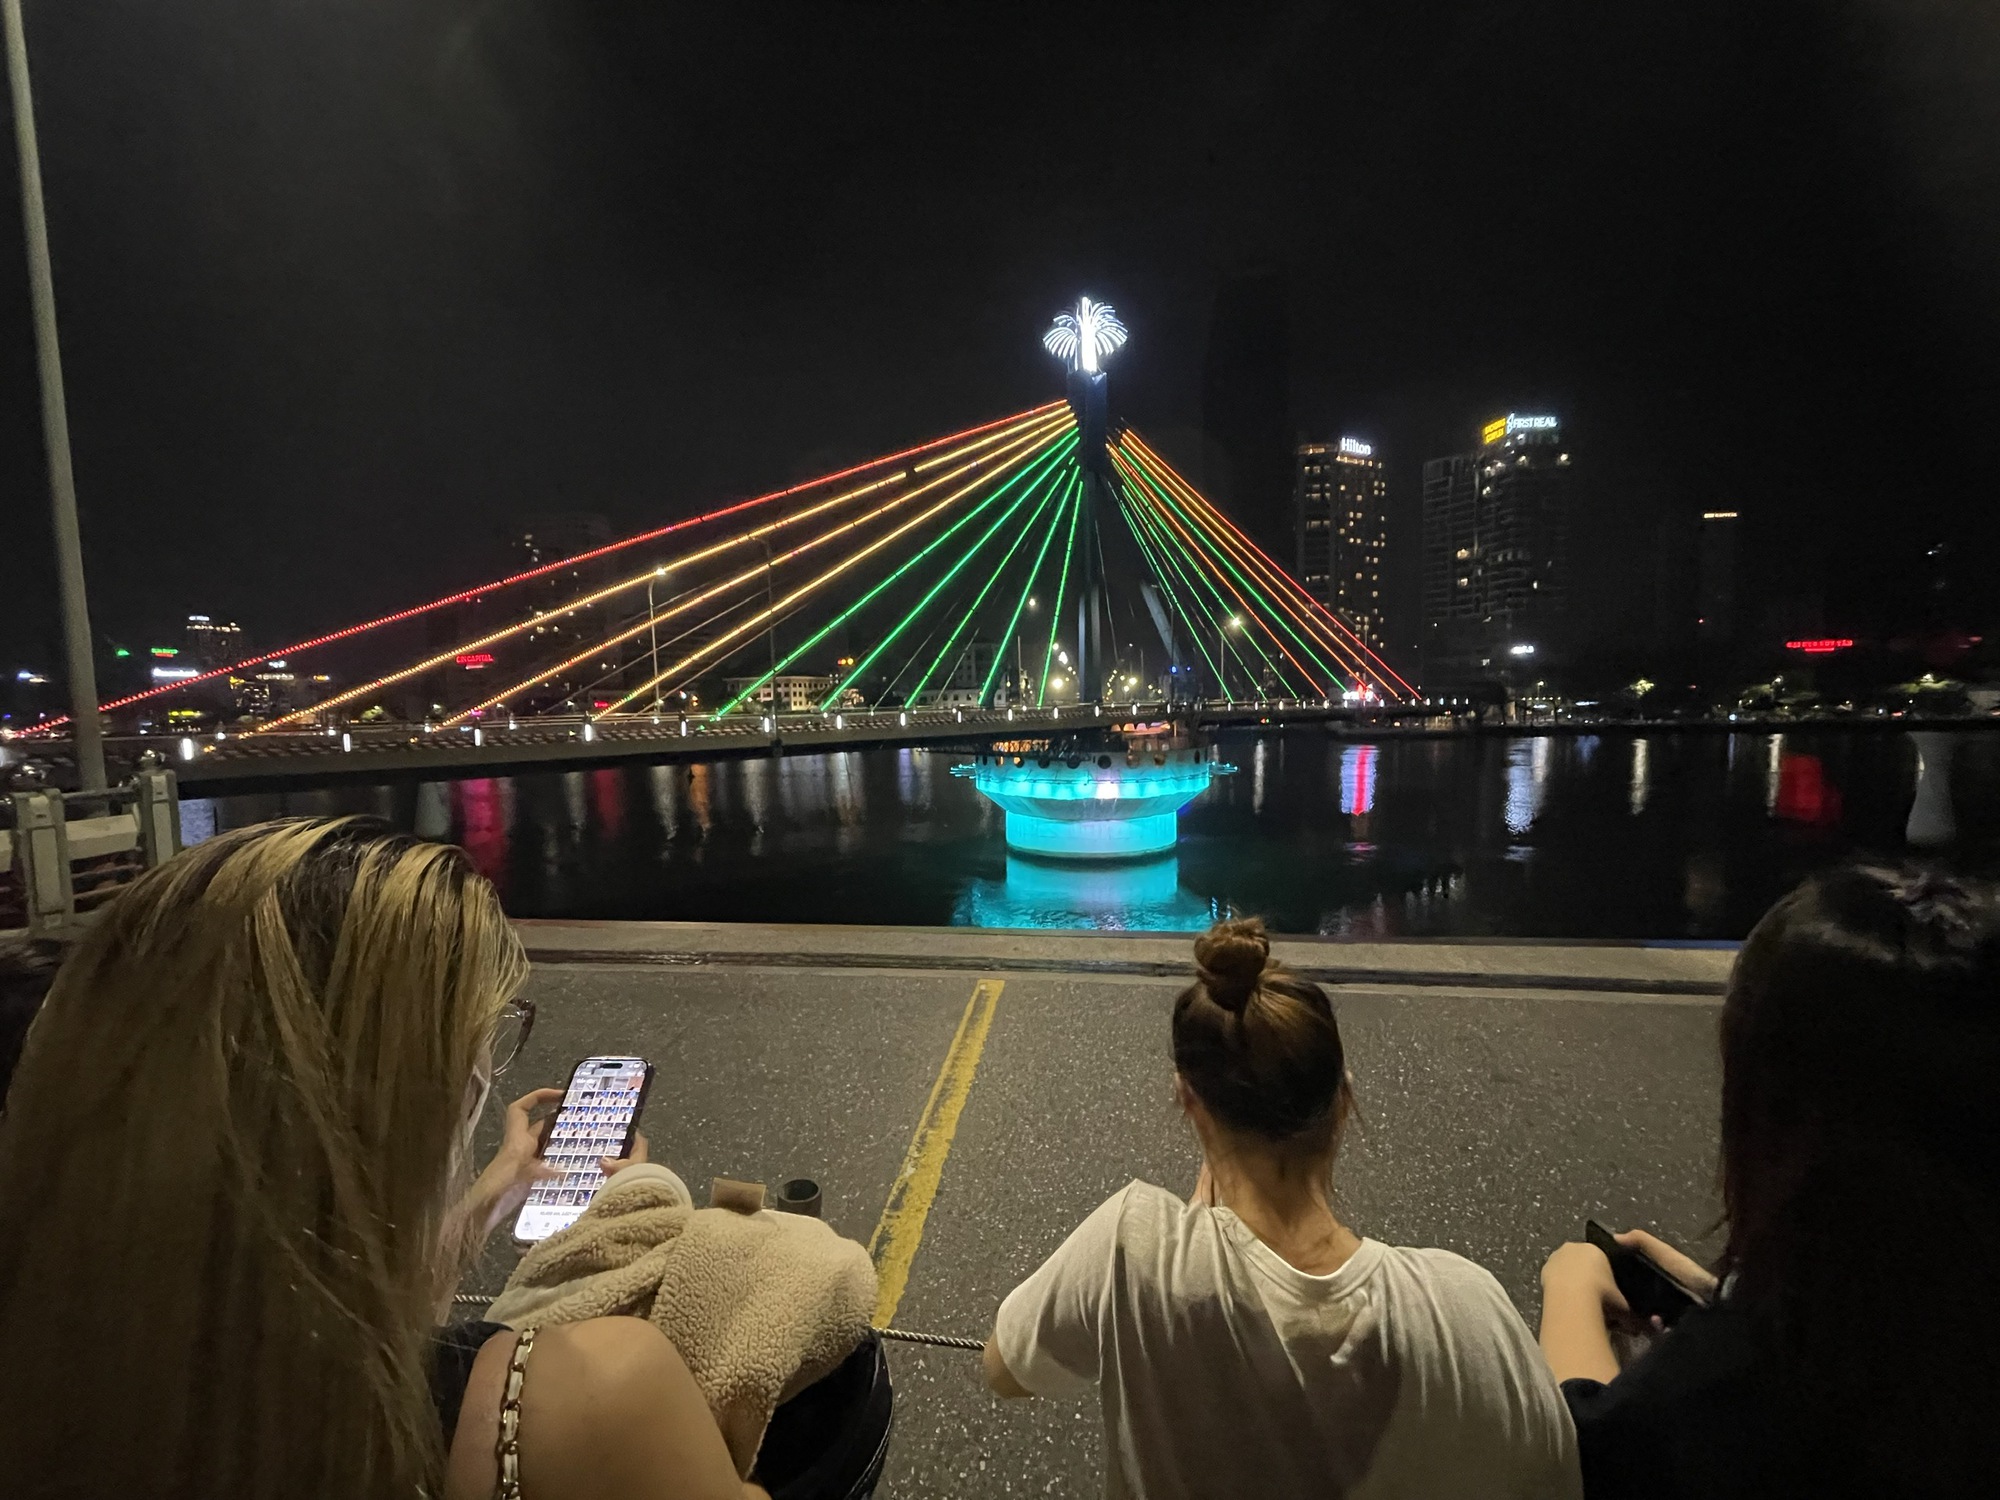 Du lịch Đà Nẵng qua những cây cầu độc đáo - 4